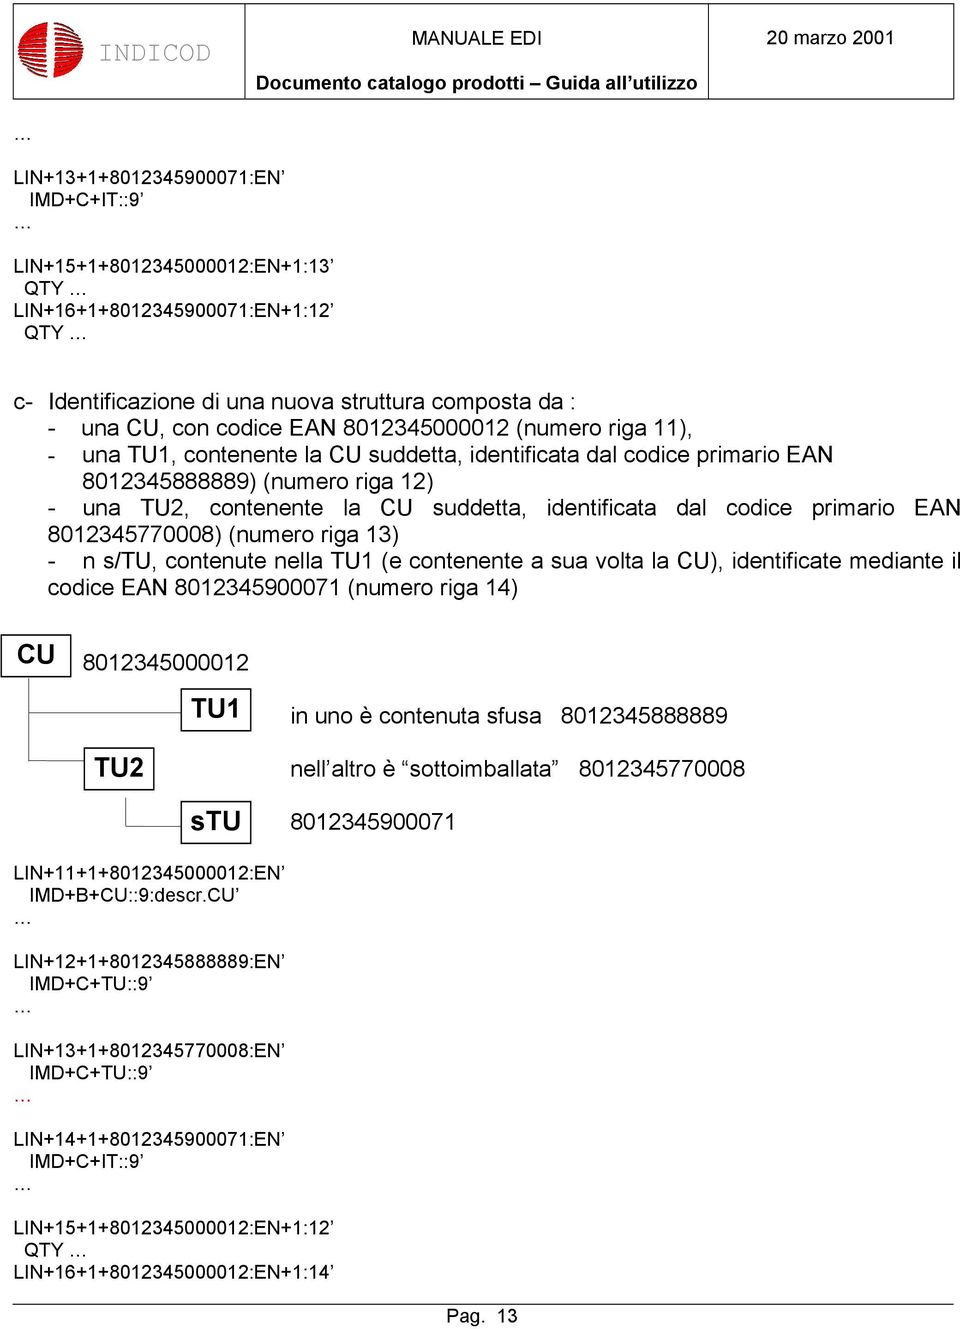 la CU suddetta, identificata dal codice primario EAN 8012345770008) (numero riga 13) - n s/tu, contenute nella TU1 (e contenente a sua volta la CU), identificate mediante il codice EAN 8012345900071